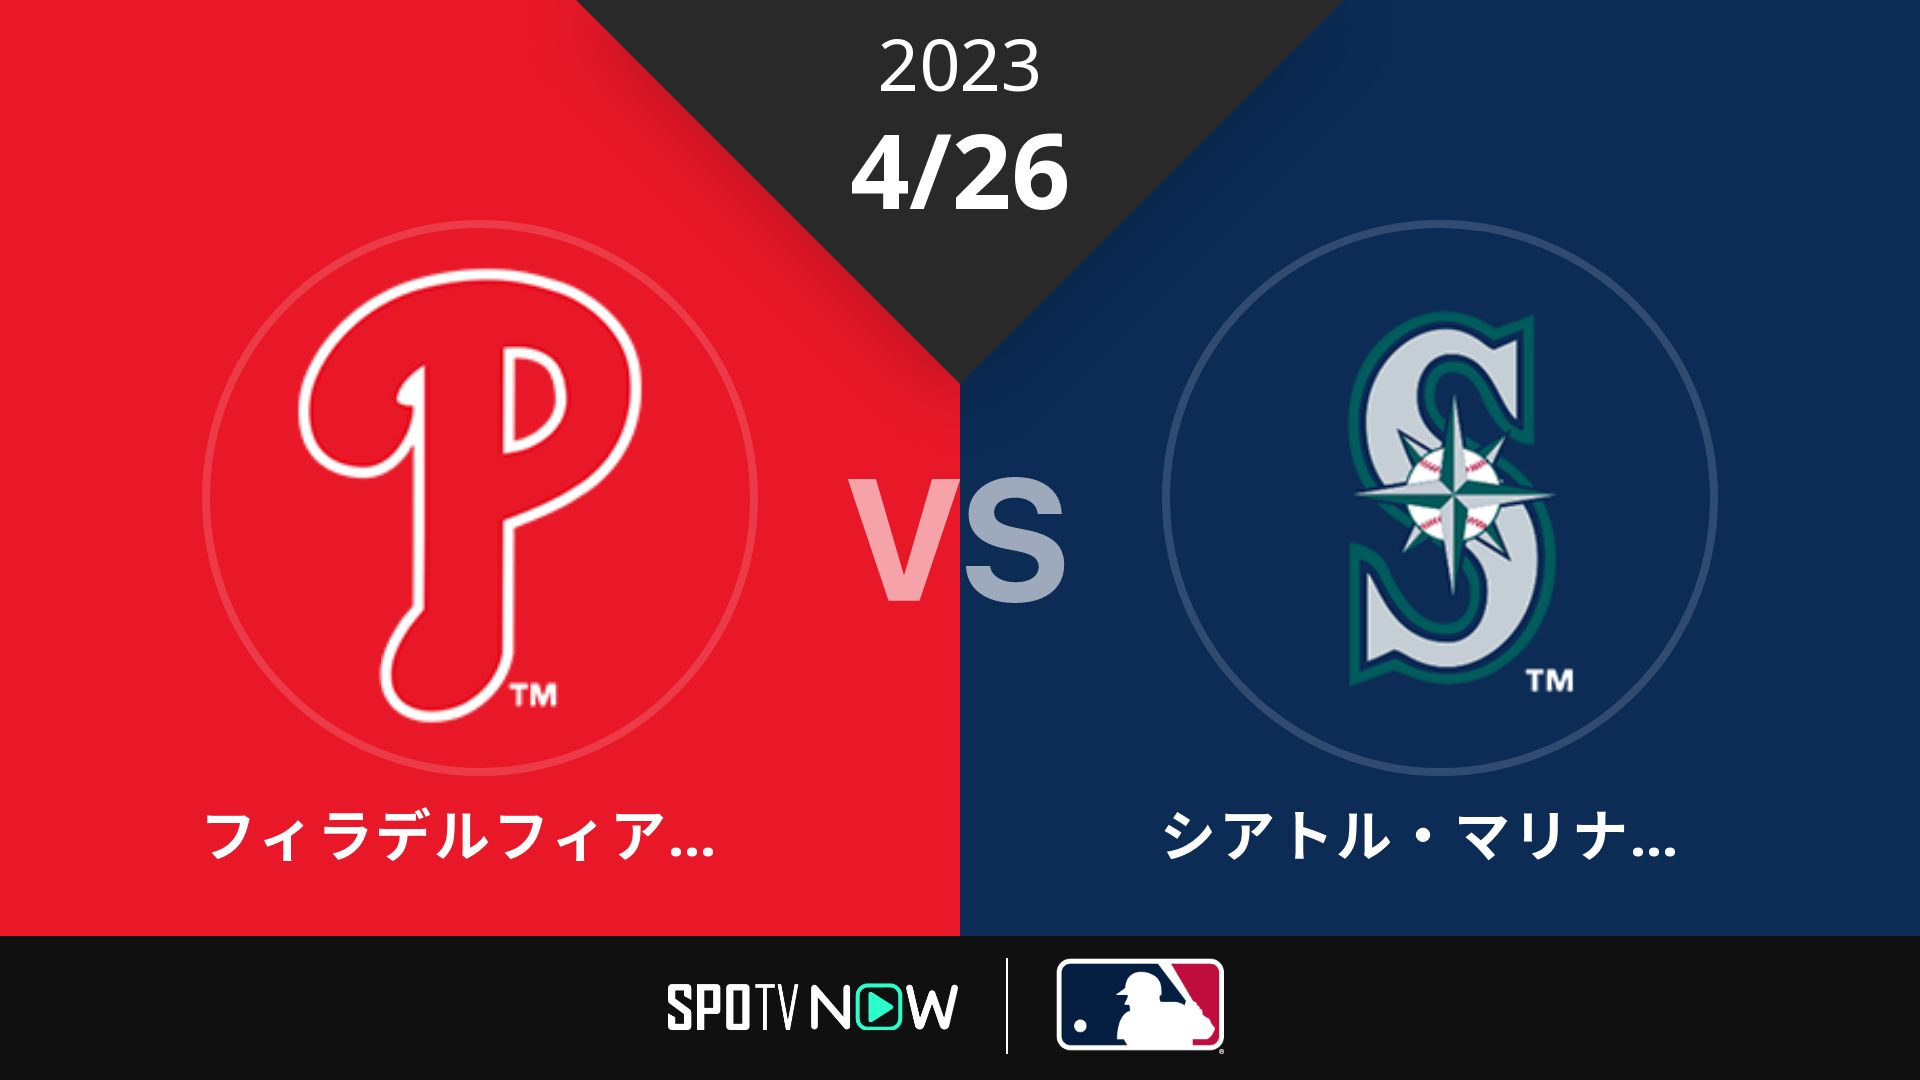 2023/4/26 フィリーズ vs マリナーズ [MLB]